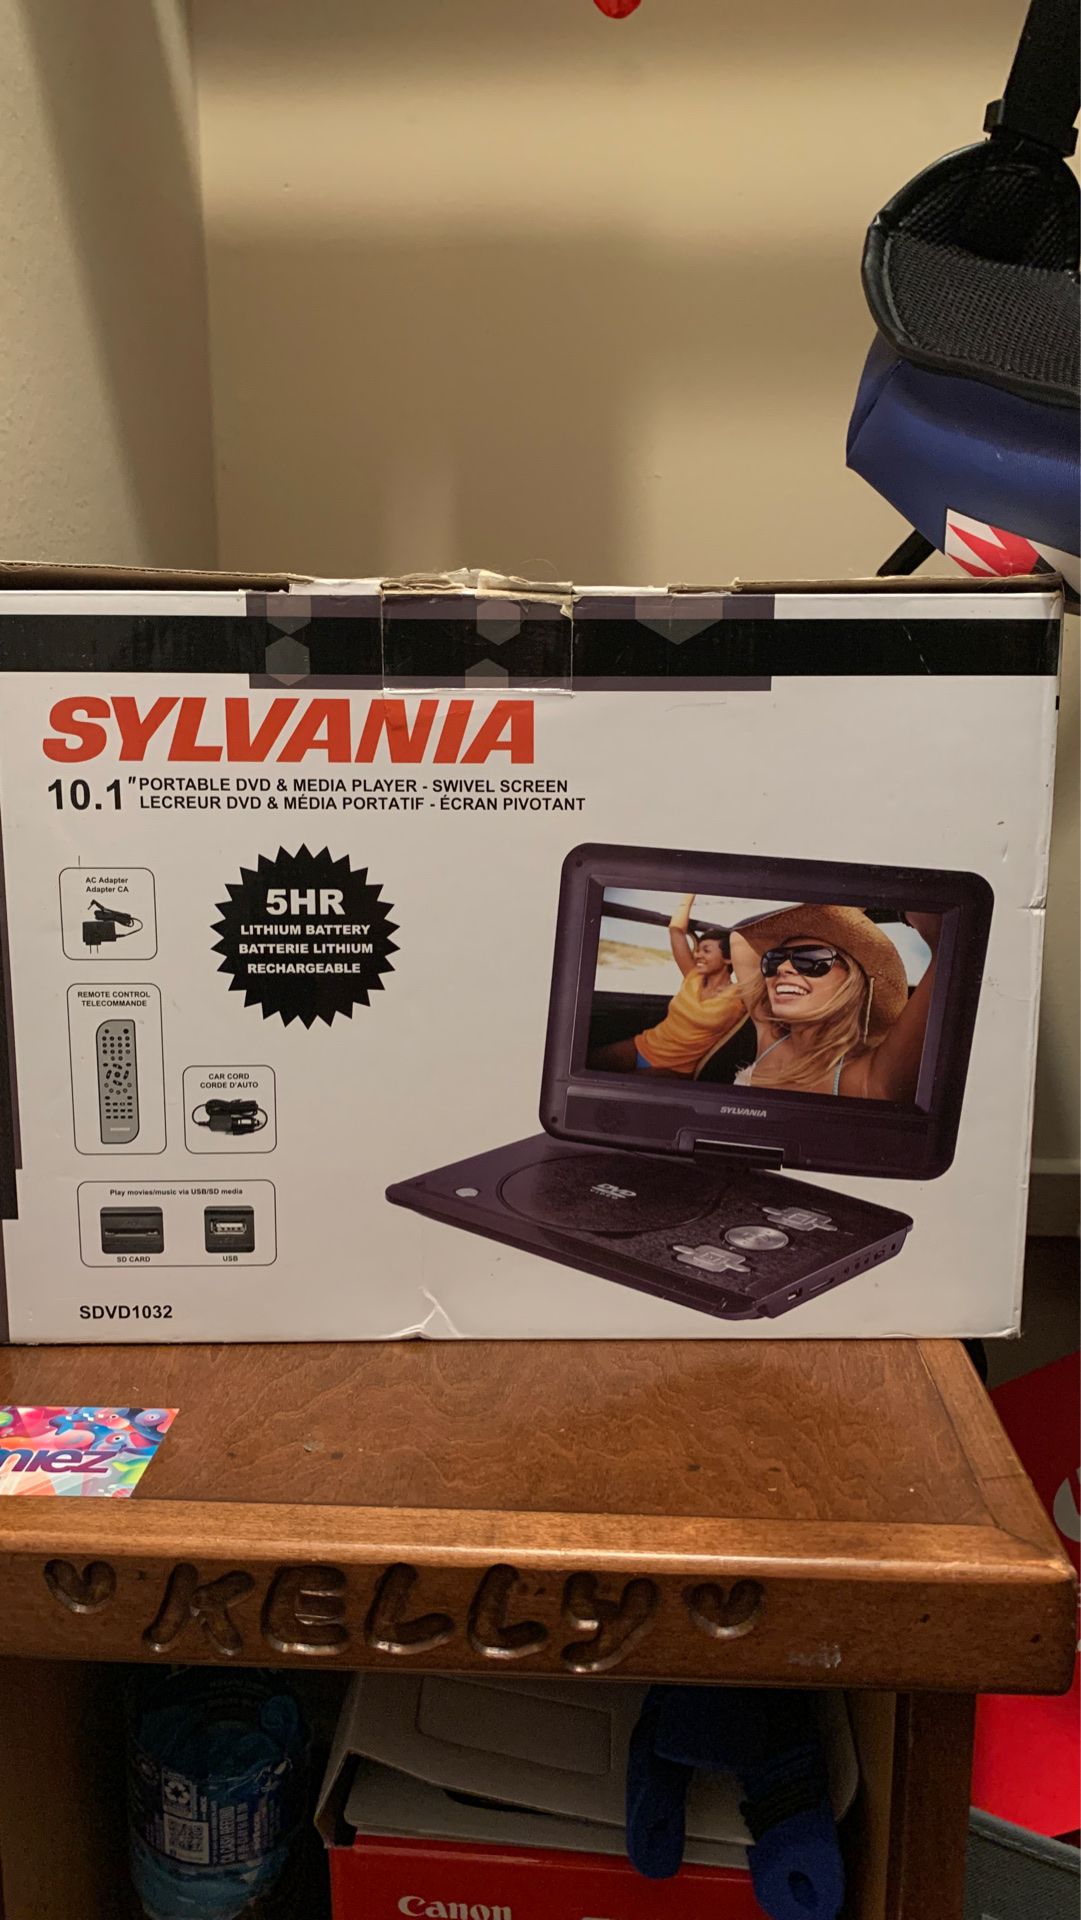 Sylvania DVD portable player